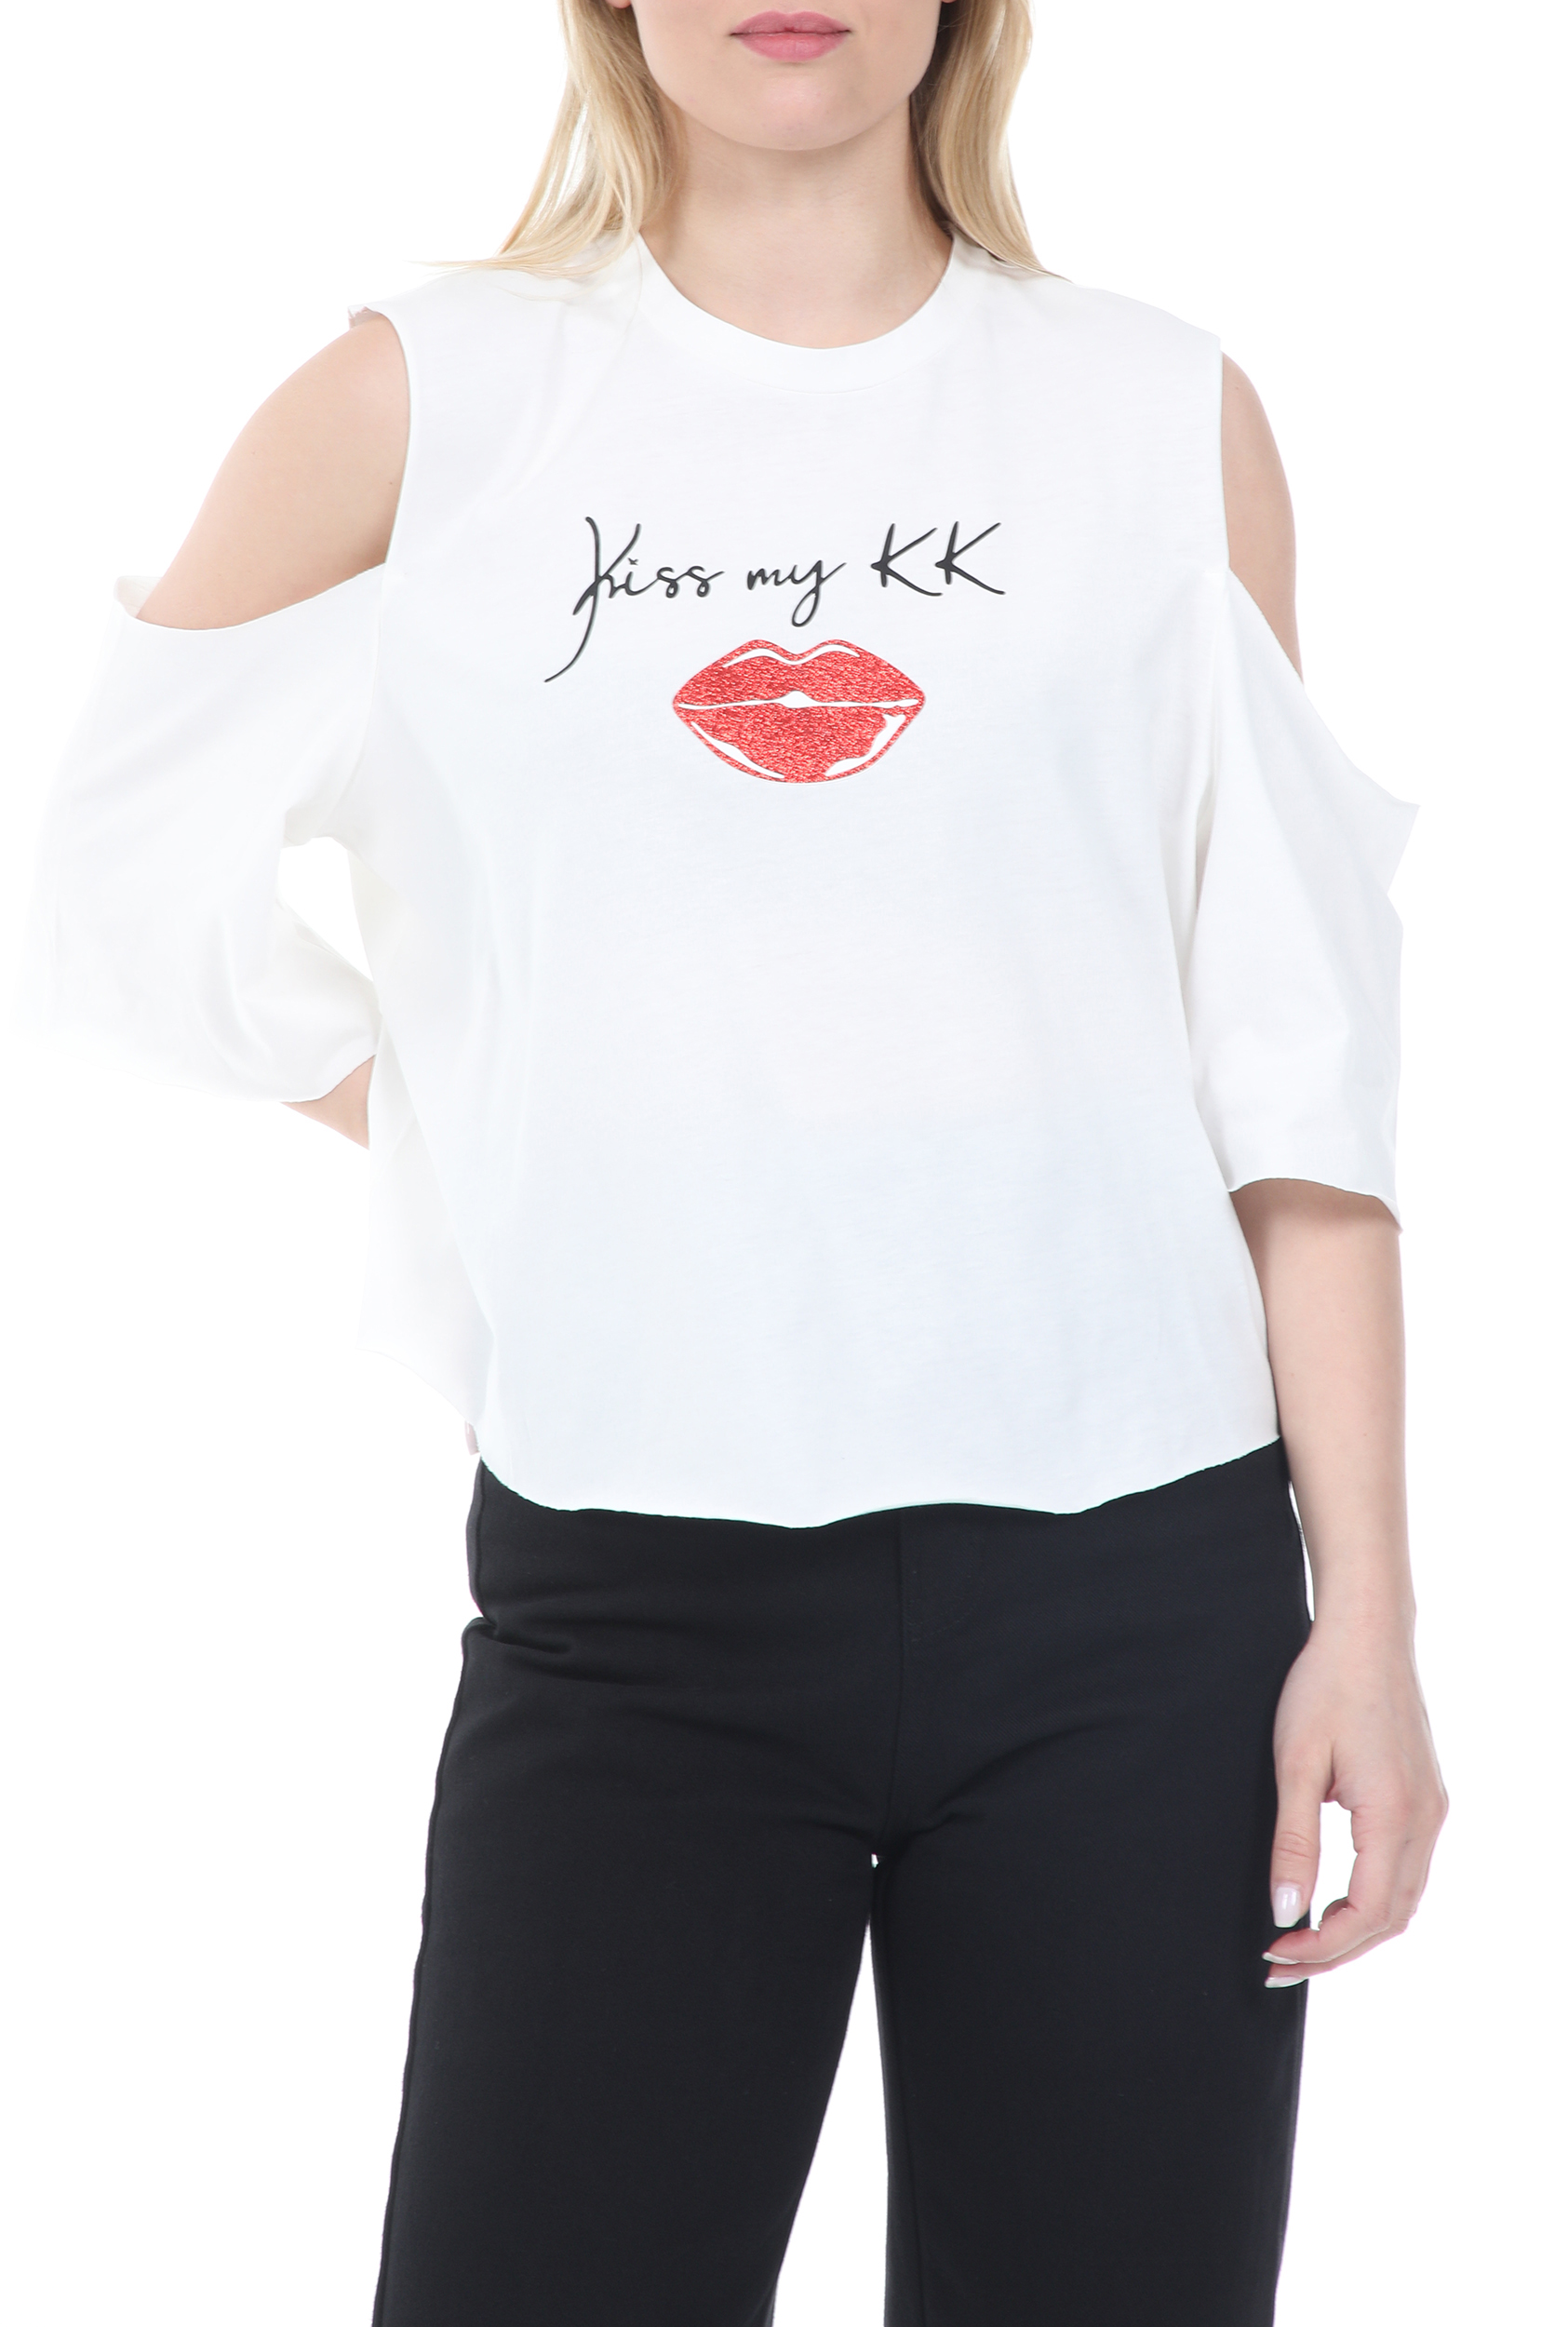 Γυναικεία/Ρούχα/Μπλούζες/Κοντομάνικες KENDALL + KYLIE - Γυναικεία μπλούζα KENDALL + KYLIE KISS MY LIPS λευκή